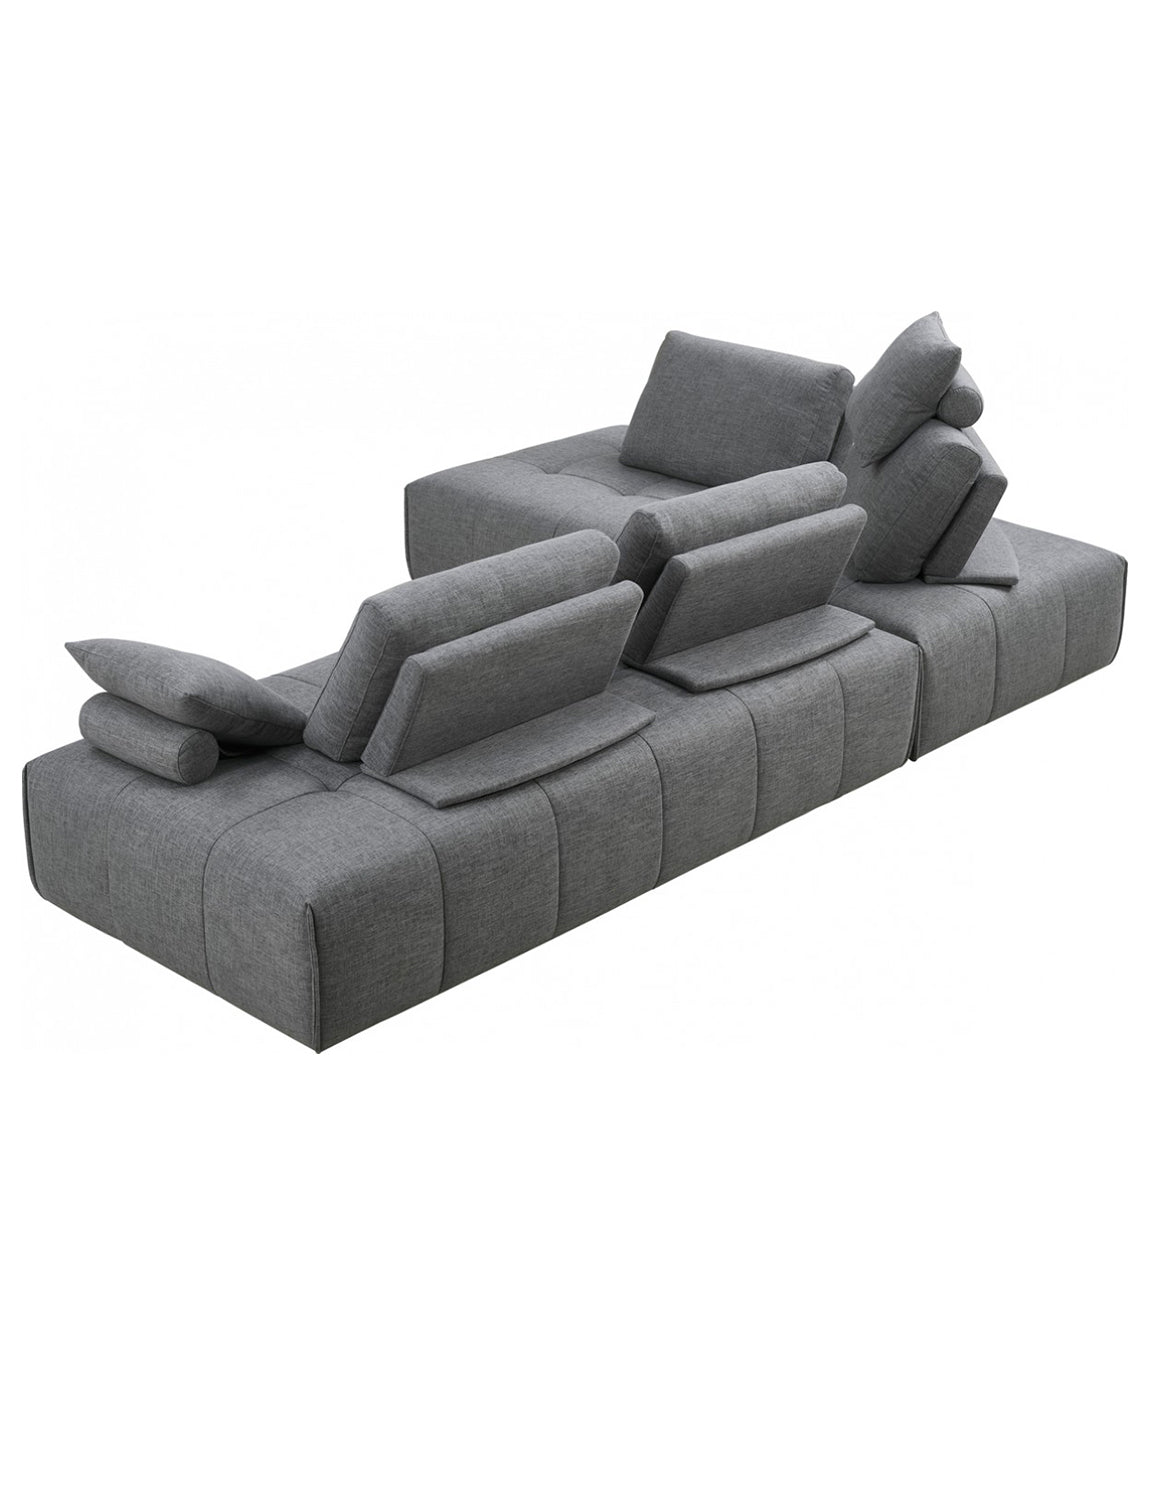 Da Vinci Sectional Sofa